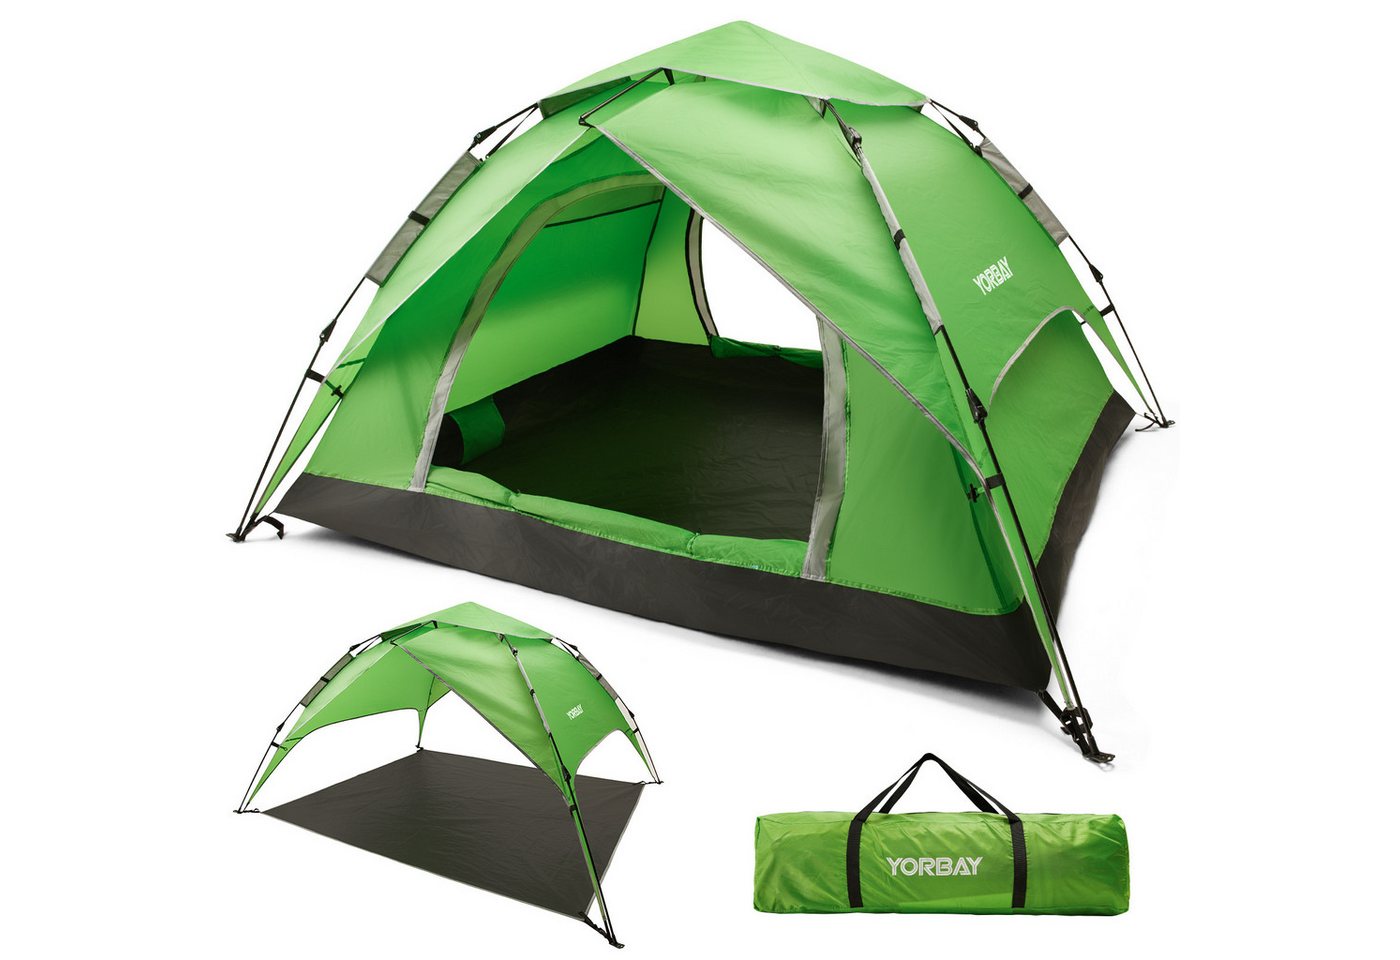 Yorbay Kuppelzelt 2 in 1 Pop Up Campingzelt doppelwandig wasserdicht UV-Schutz, (mit Heringen, Windseile und Tragetasche), für 2-3 Personen für Wandern, Trekking, Outdoor von Yorbay